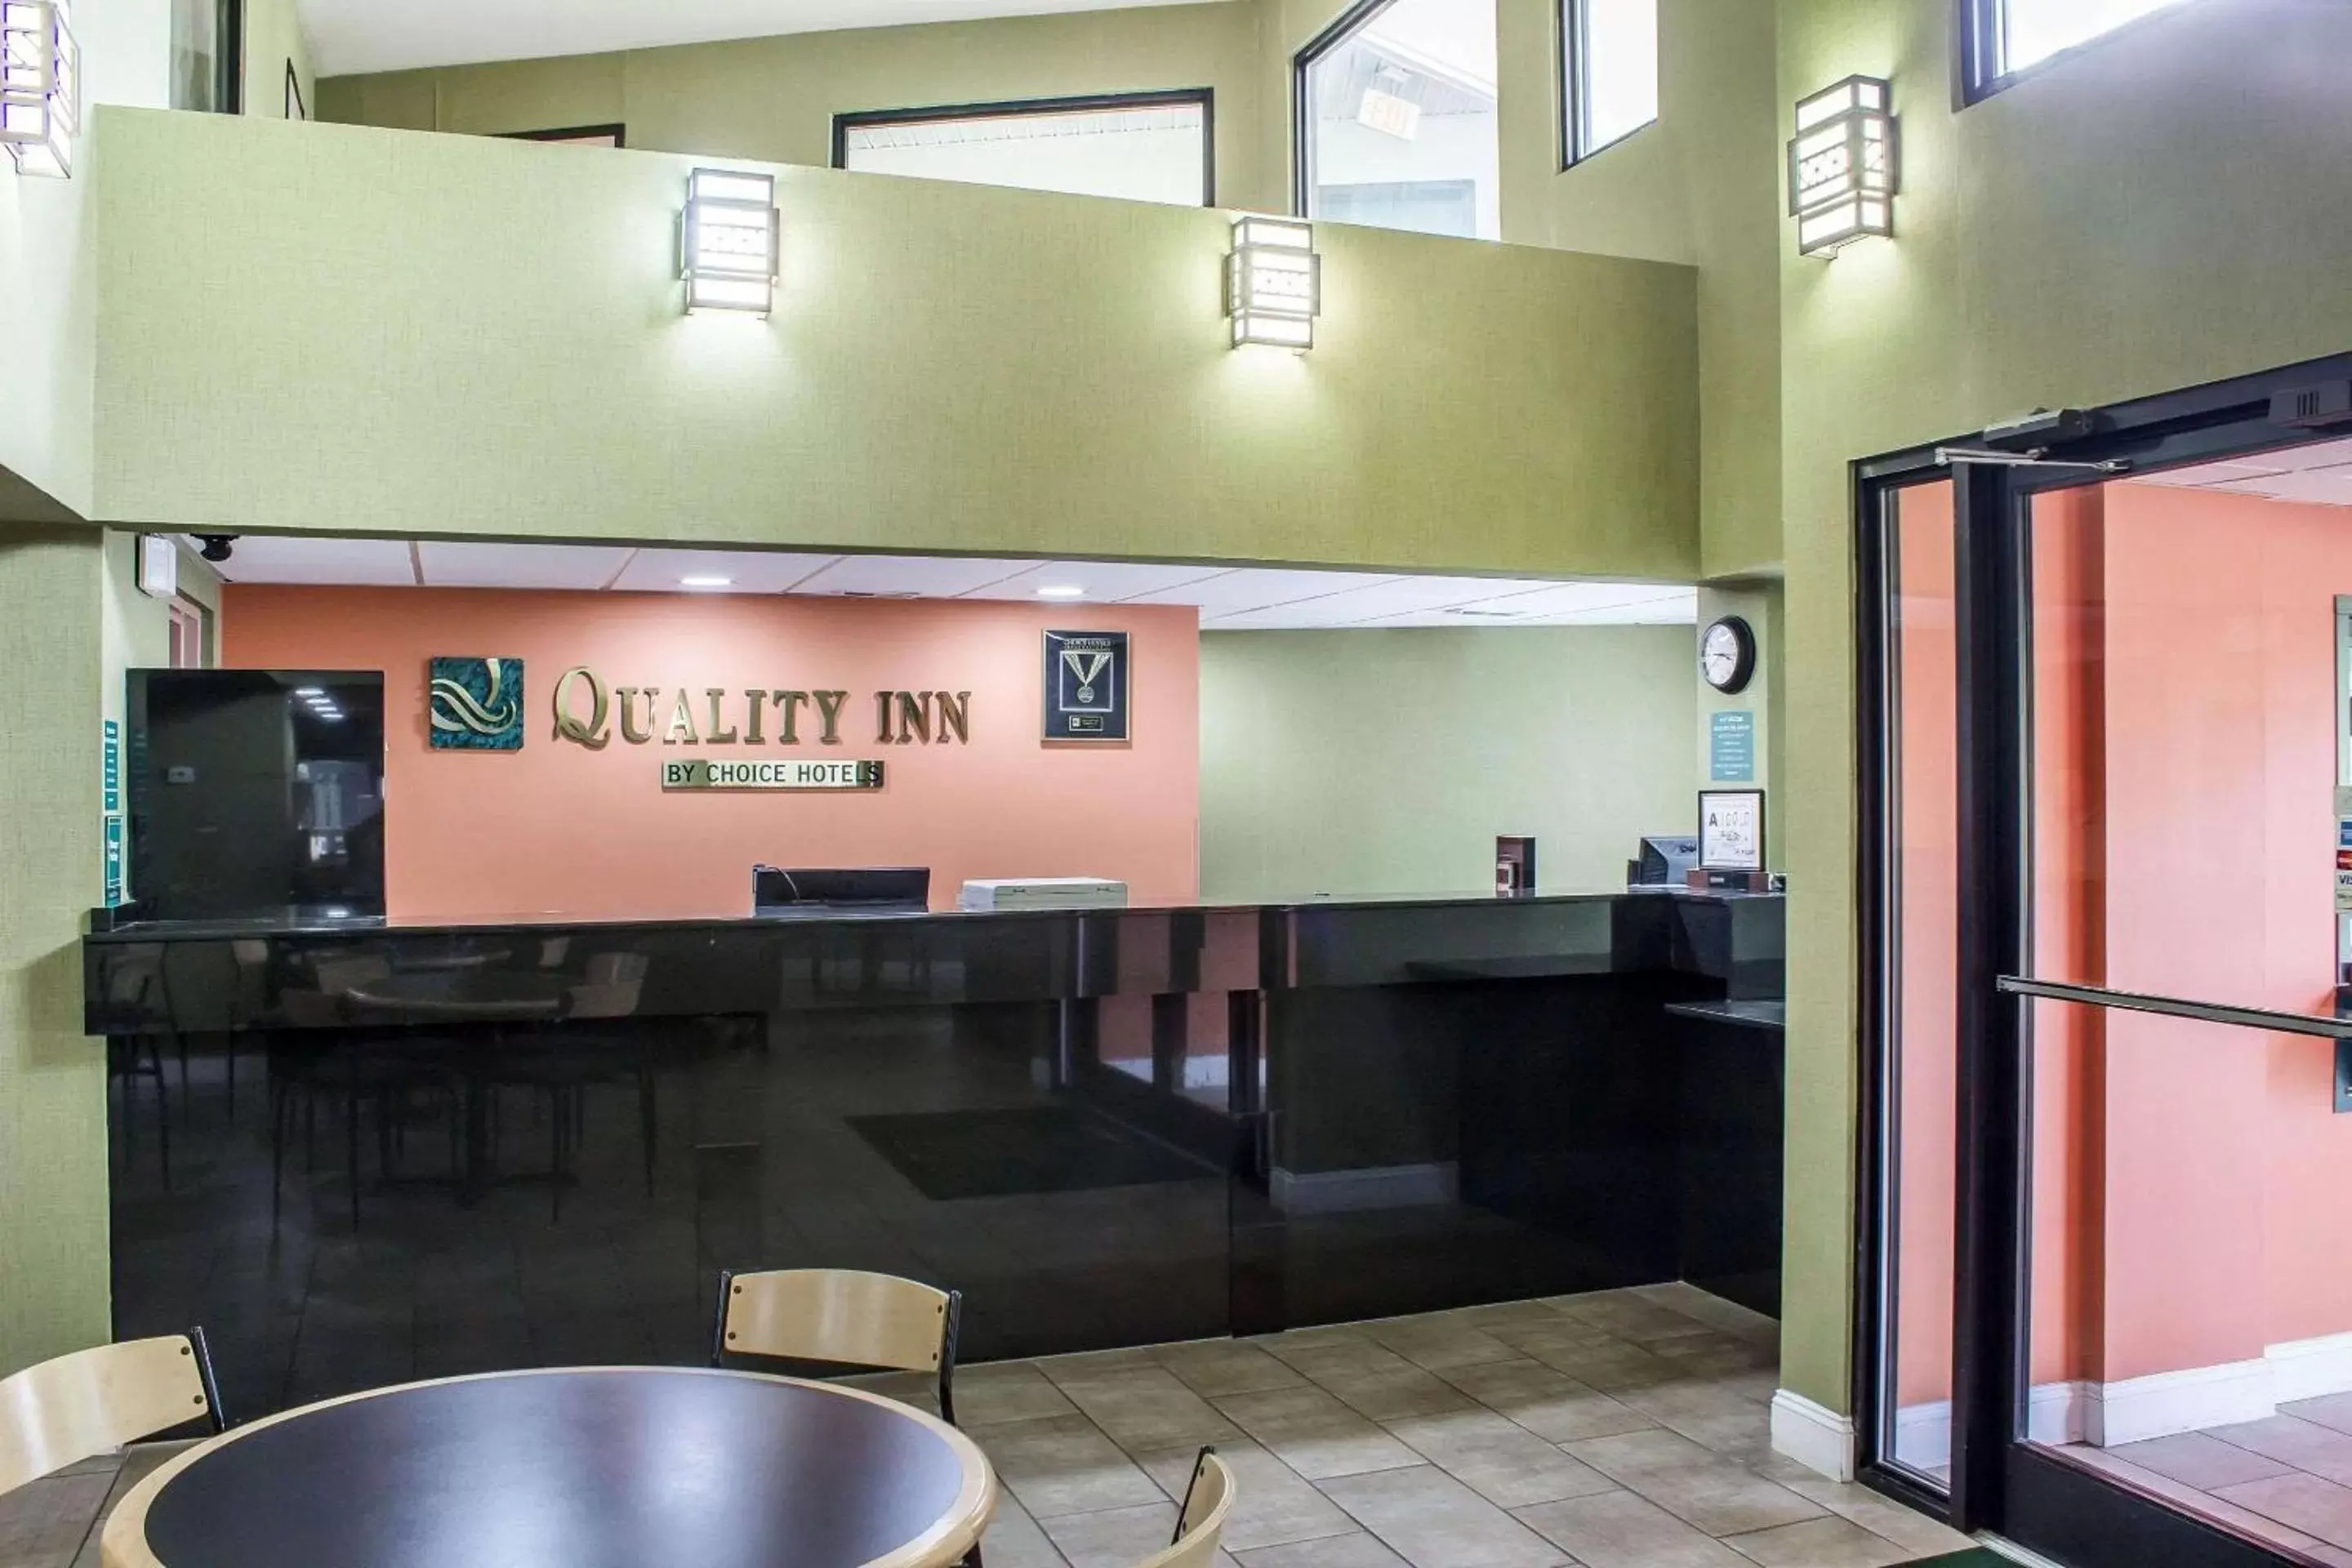 Lobby or reception in Quality Inn Selma